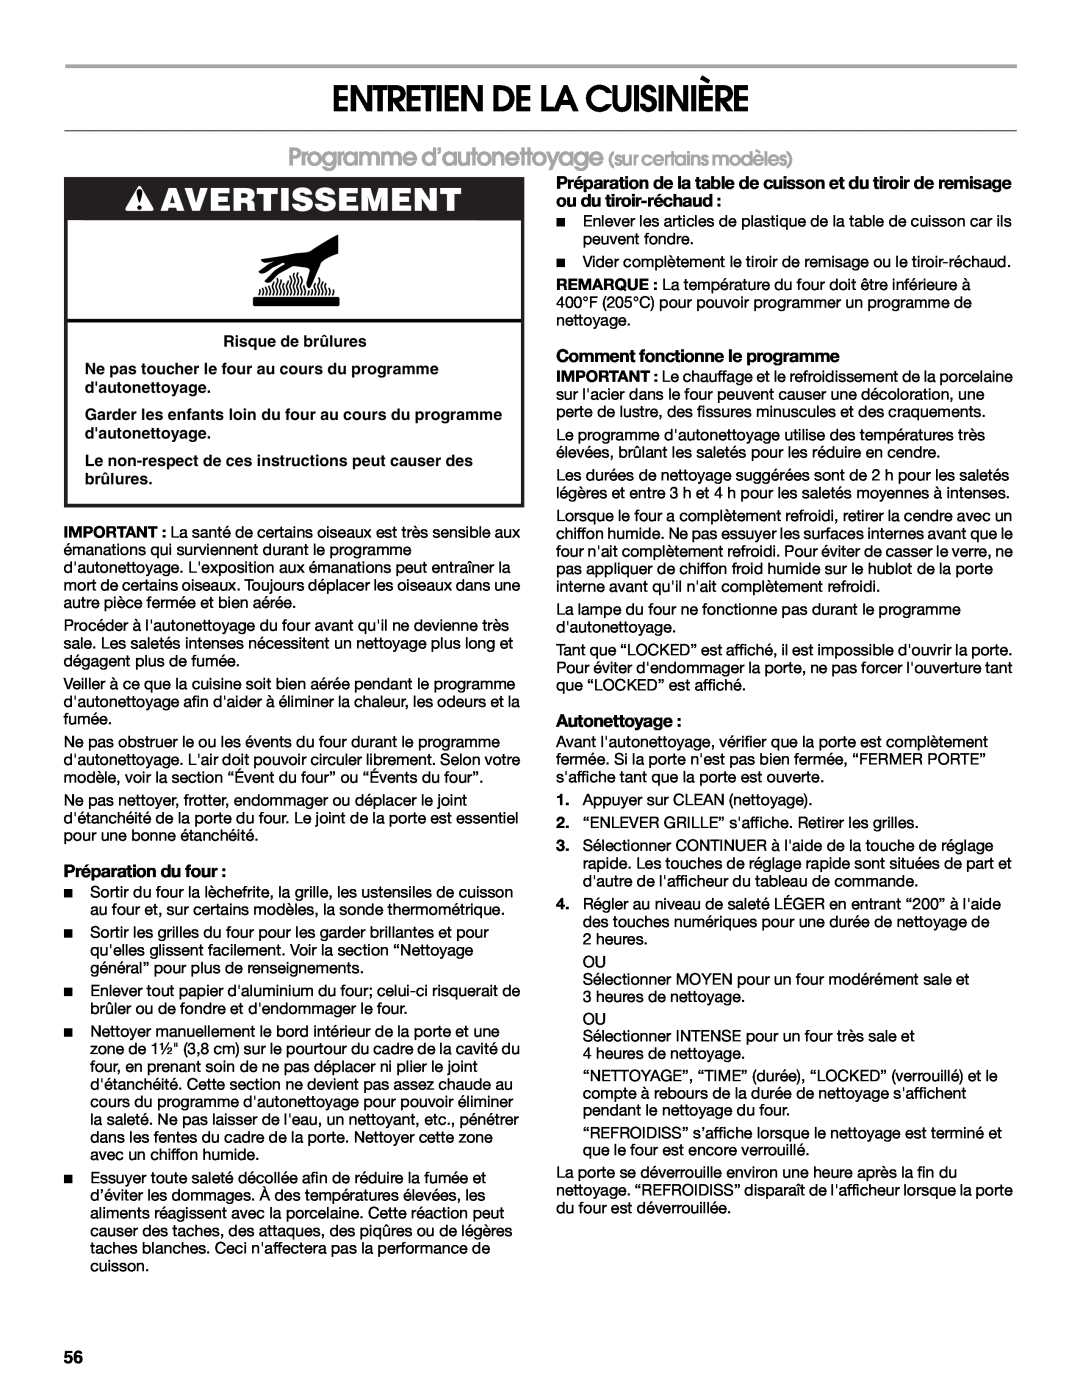 Jenn-Air JGS8750 Entretien De La Cuisinière, Programme d’autonettoyage sur certains modèles, Avertissement, Autonettoyage 